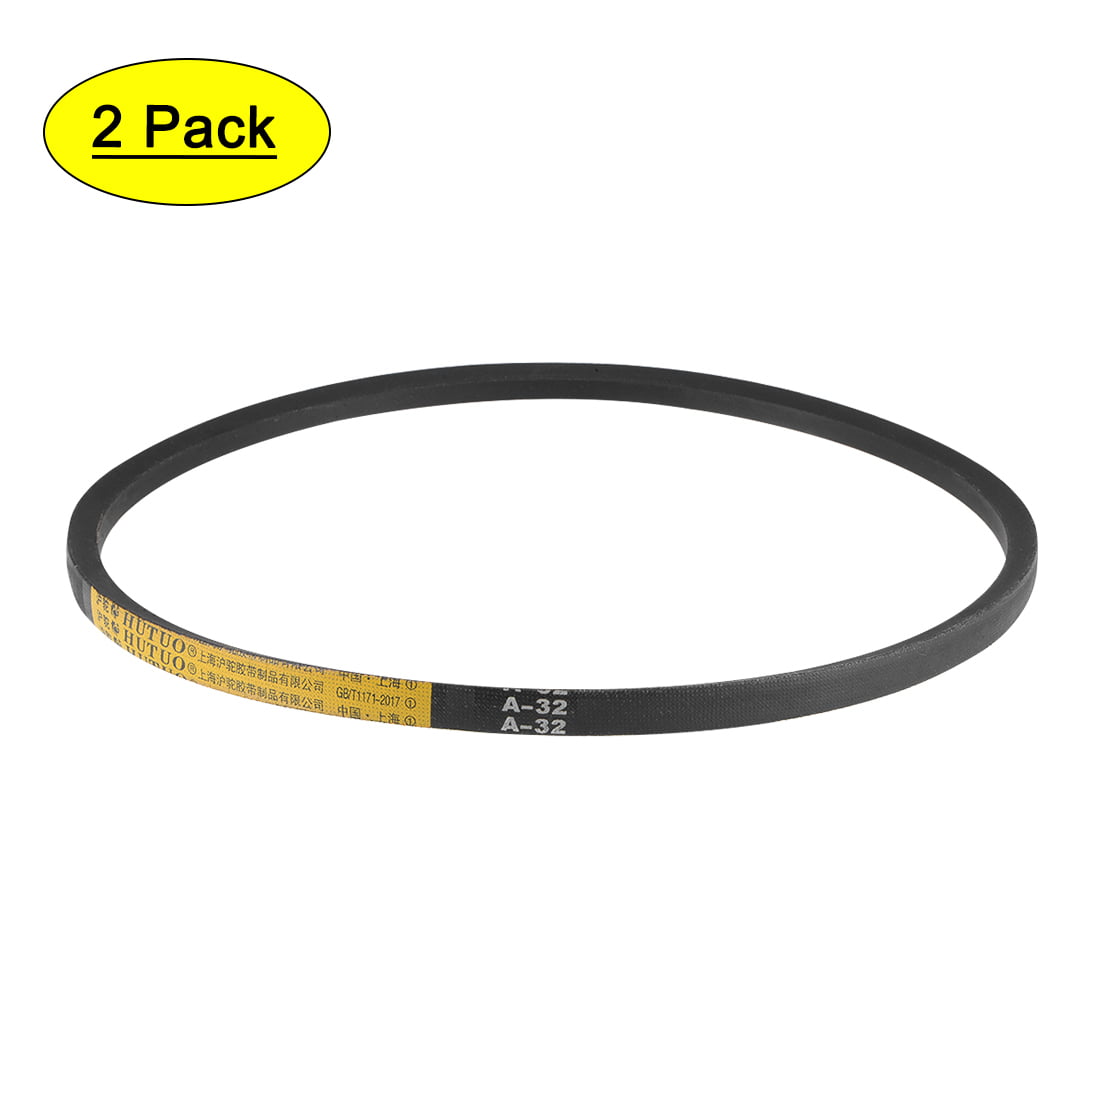 A32 V-Belts 32" Pitch Length A-Section Rubber Drive Belt 2pcs 